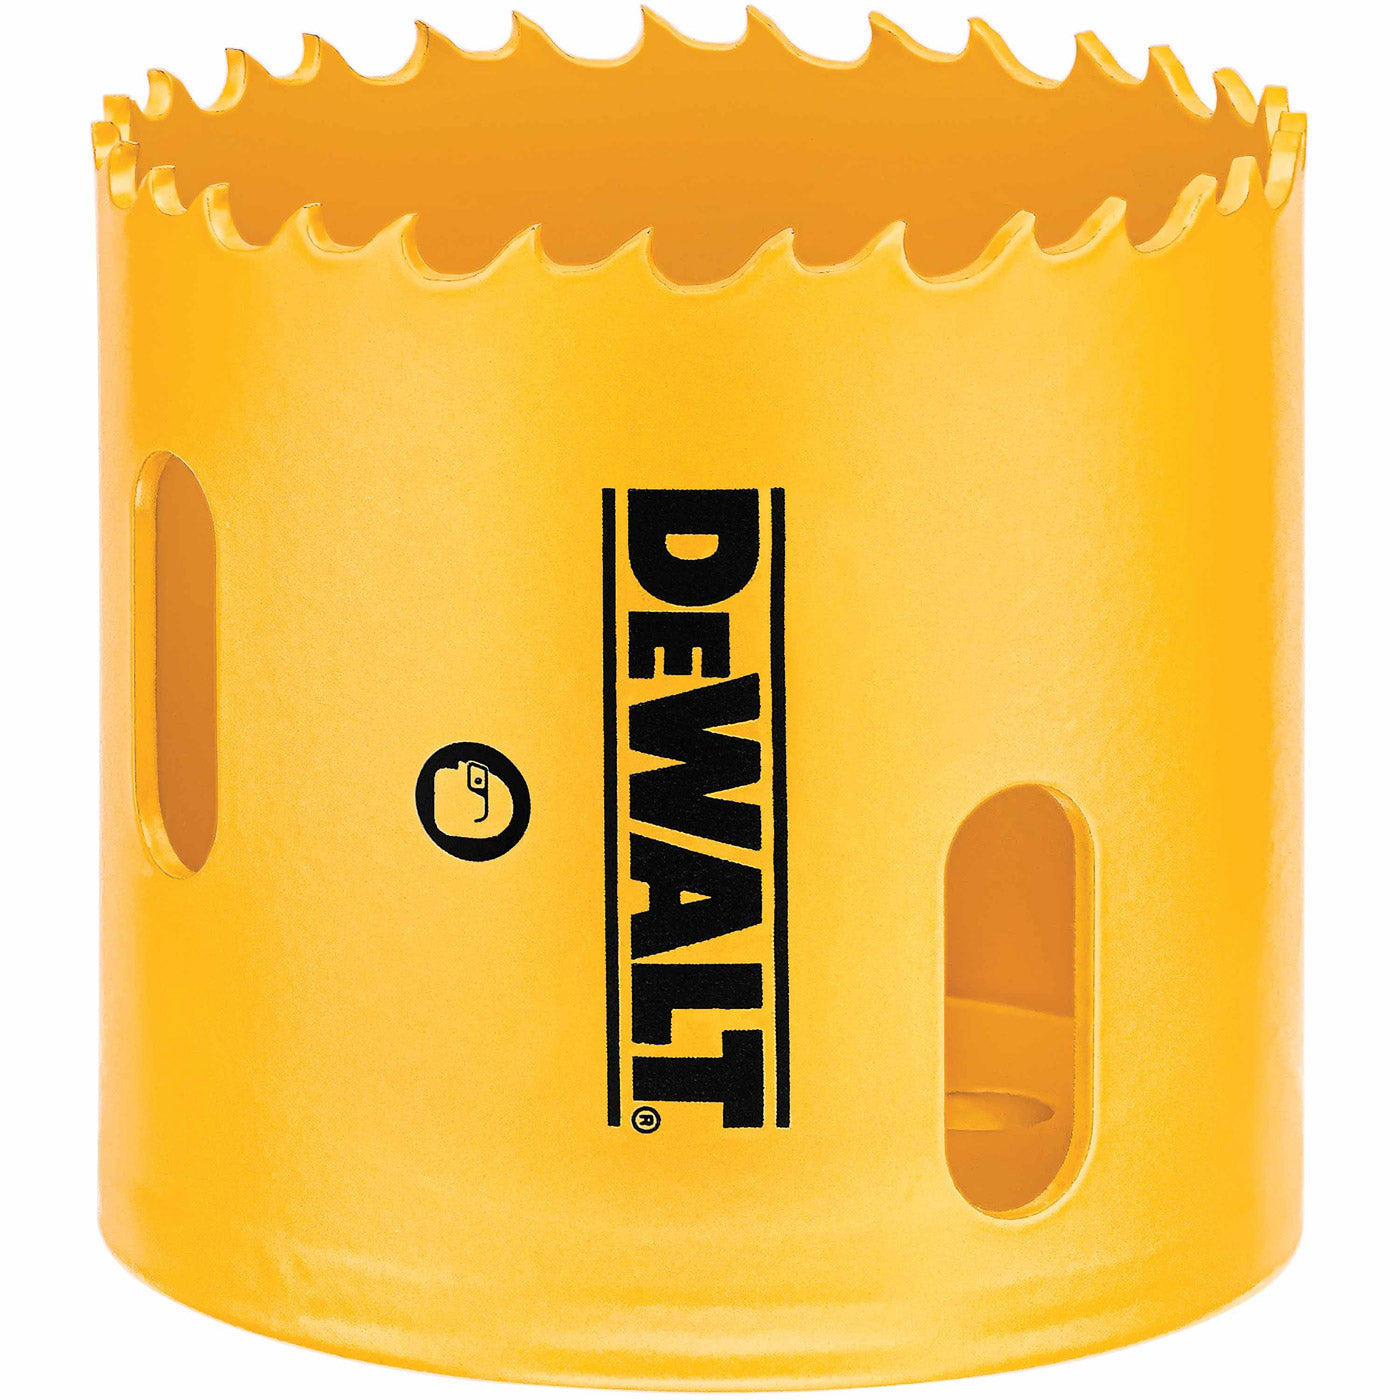 DeWalt D180030 1-7/8" (48mm) Bi-Metal Hole Saw